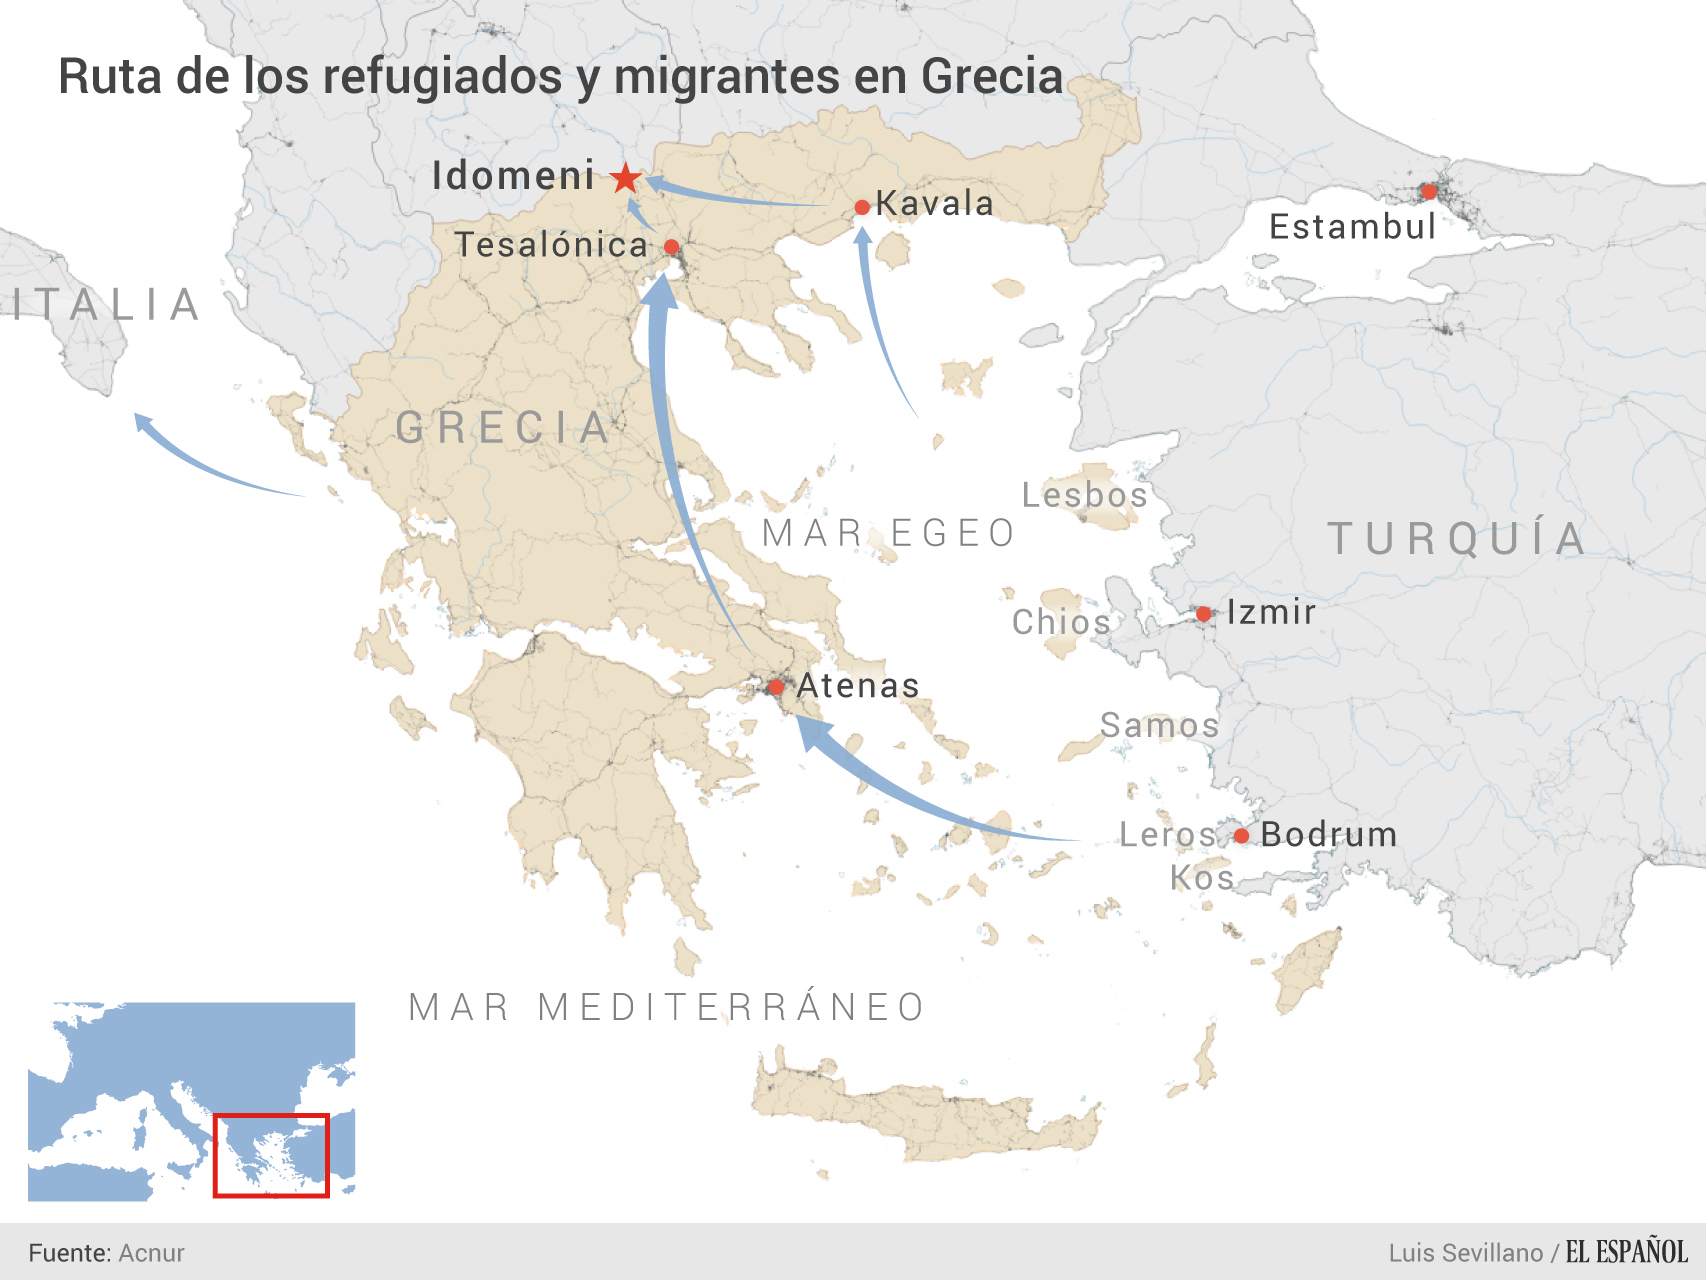 13.000 personas permanecen varadas en Idomeni, a las puertas de Macedonia.